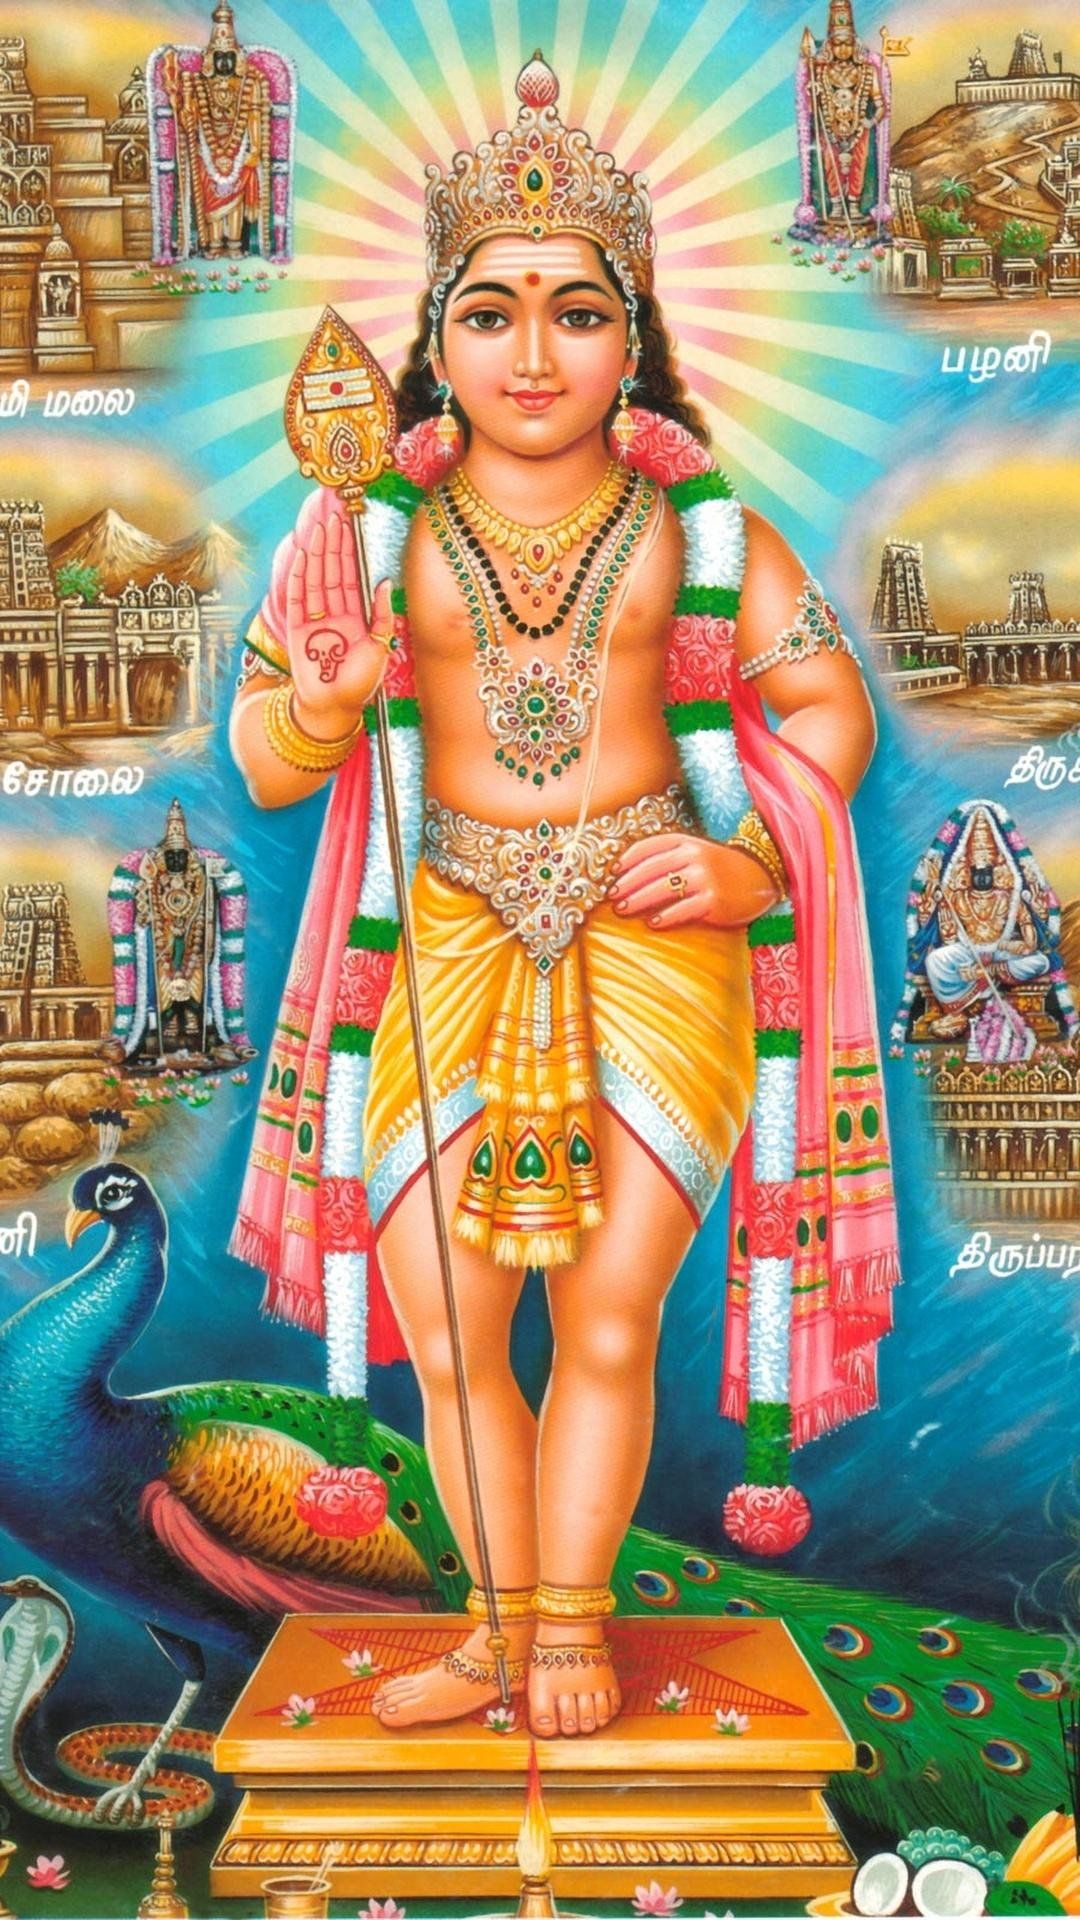 All Hindu Gods Wallpapers - Wallpaper Cave